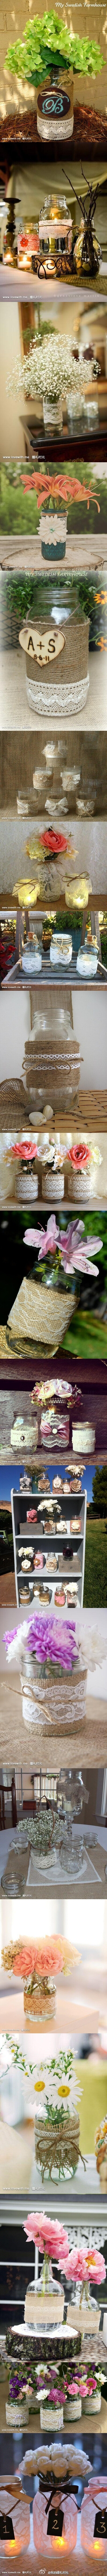 #婚礼布置#麻布与蕾丝装饰的婚宴桌花瓶，完美的结合能给亲的婚礼布置带去非同一般的感觉哦~http://www.lovewith.me/share/detail/all/28330